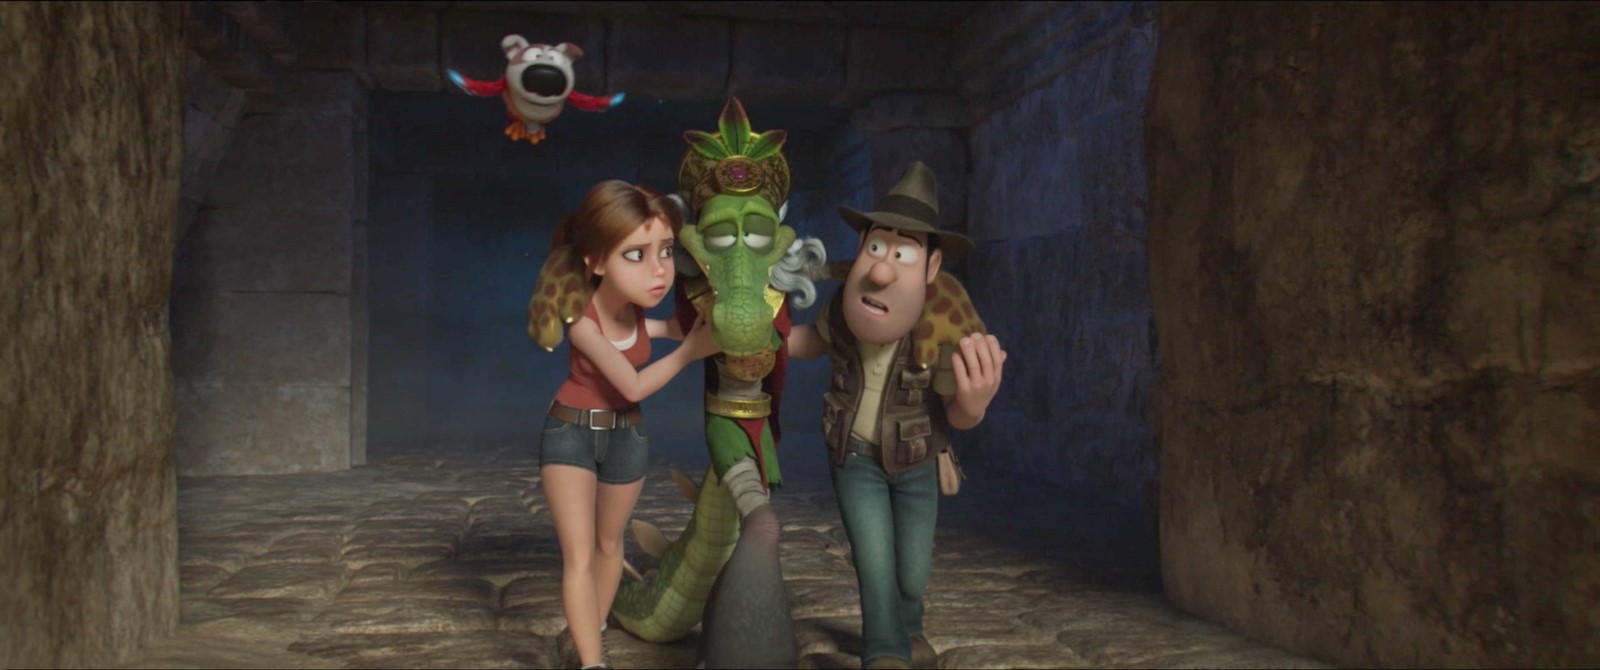 Szenenbild aus dem Film „Tad Stones und die Suche nach der Smaragdtafel“